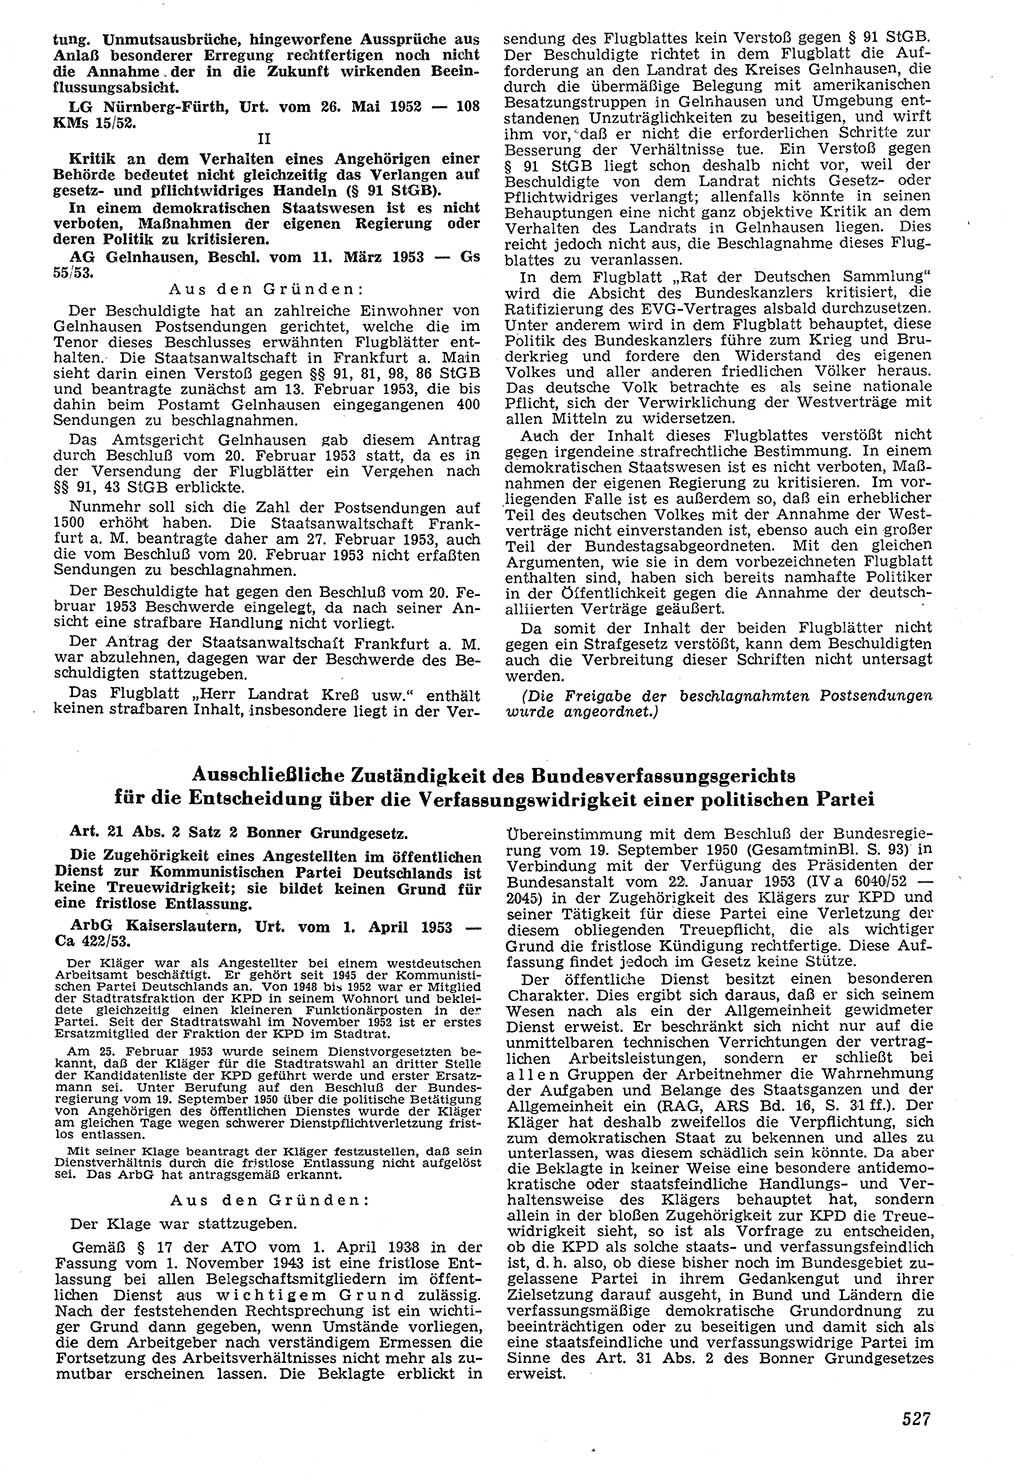 Neue Justiz (NJ), Zeitschrift für Recht und Rechtswissenschaft [Deutsche Demokratische Republik (DDR)], 7. Jahrgang 1953, Seite 527 (NJ DDR 1953, S. 527)